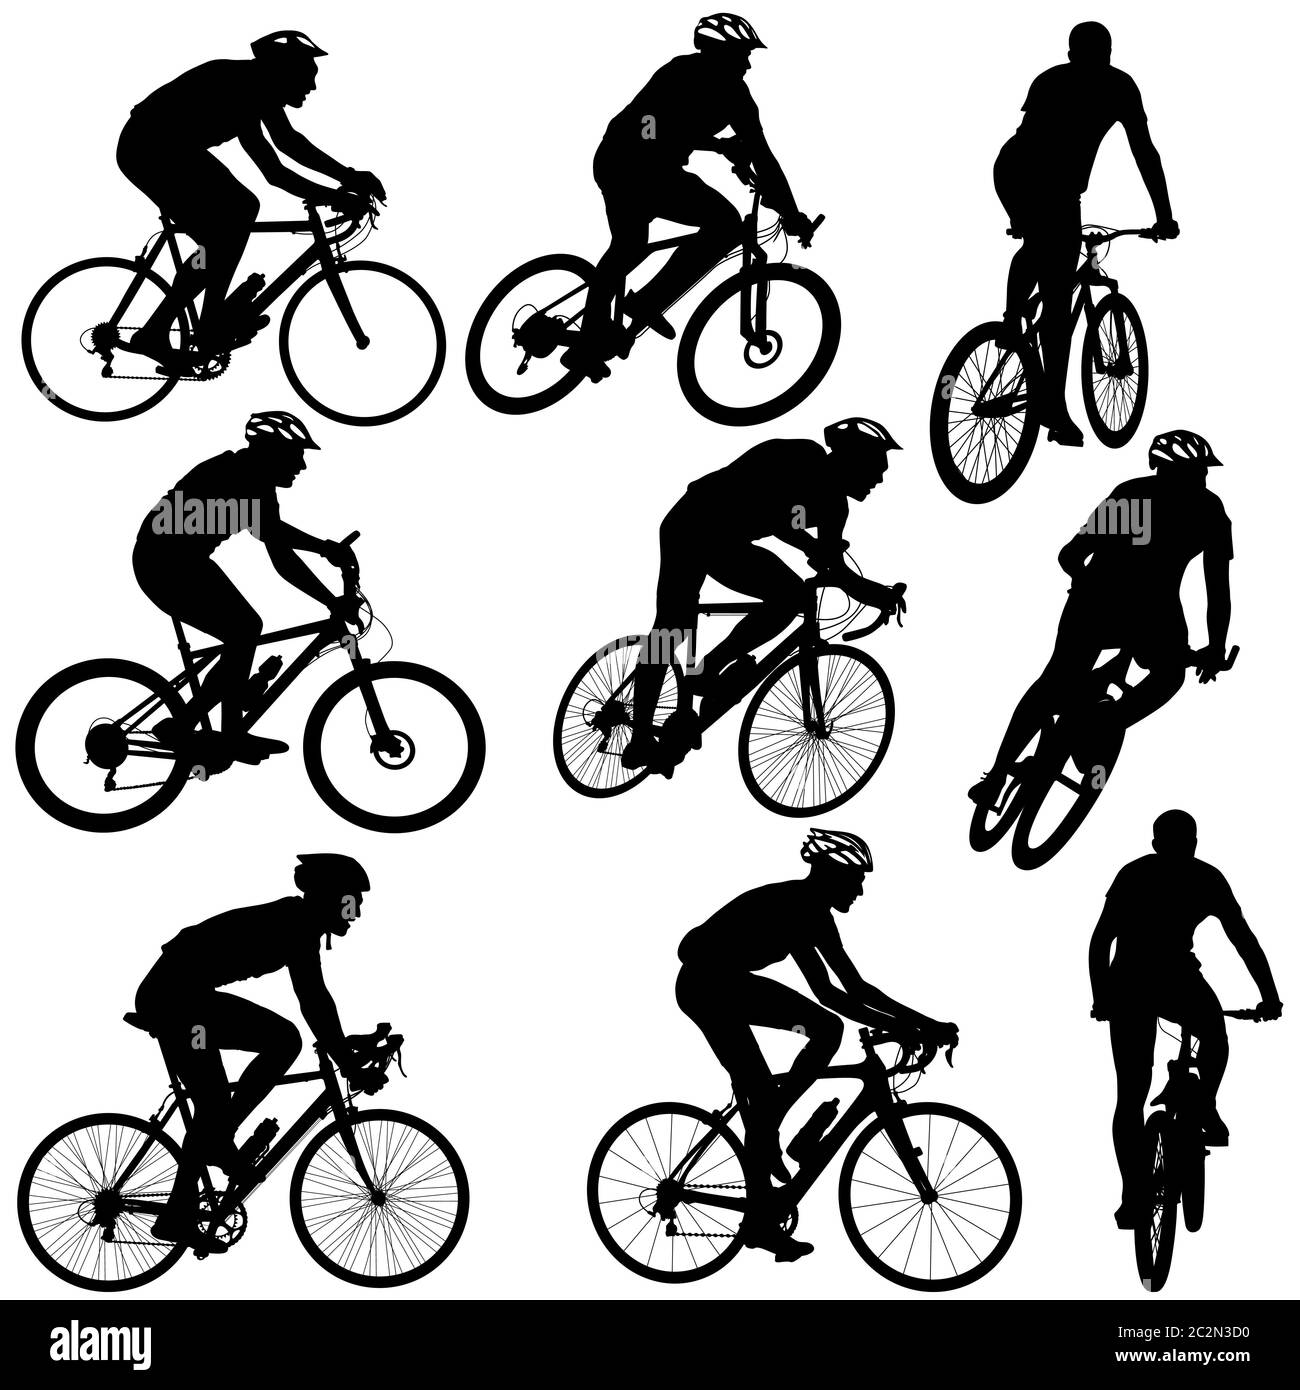 Setzen Sie männliche und weibliche Silhouette eines Radfahrers.  Vektor-illustratio Stockfoto